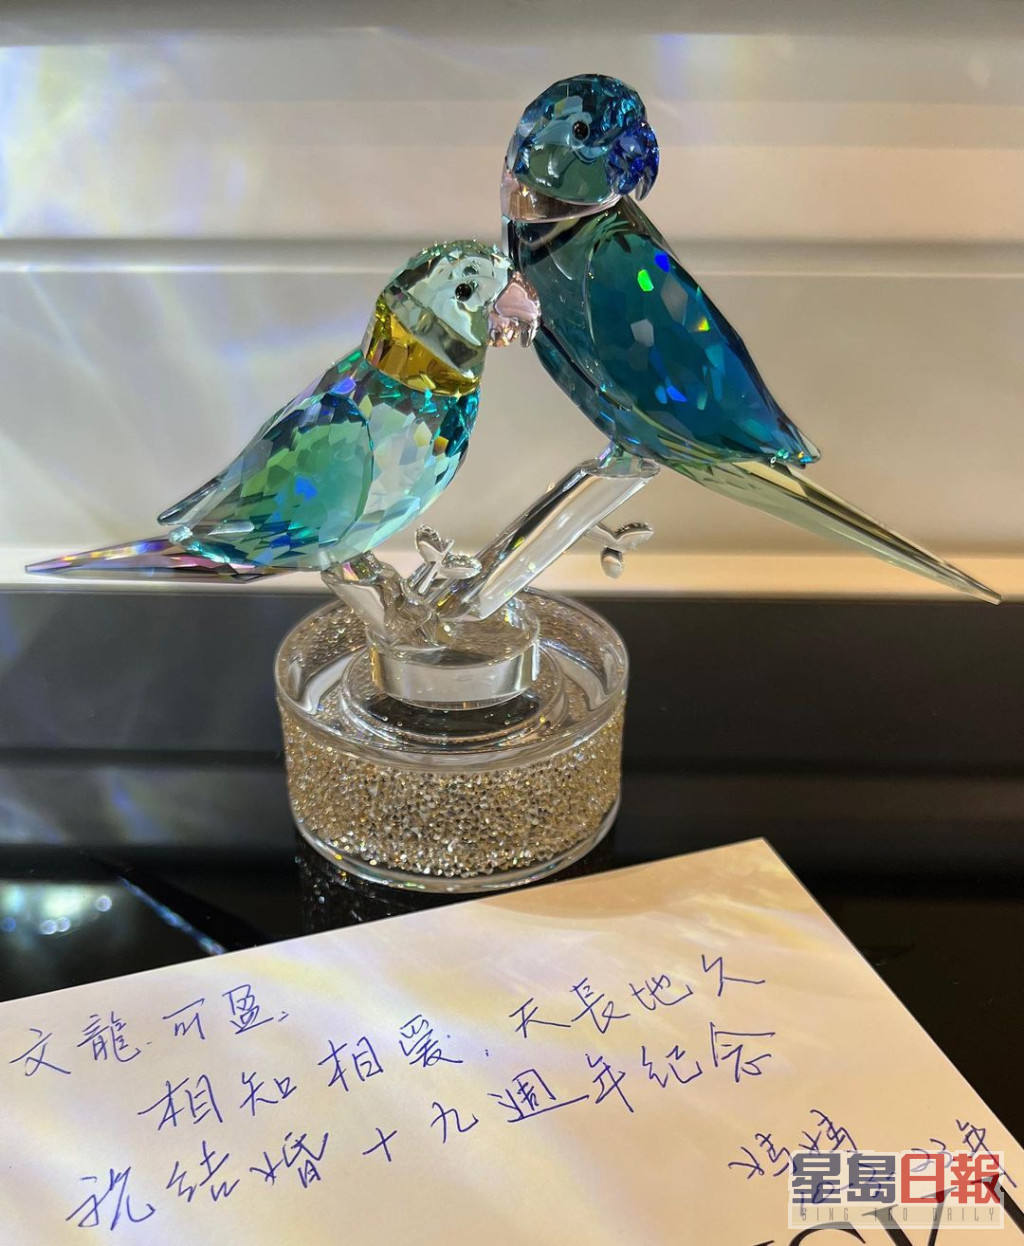 郭可盈除了分享妈妈所赠的水晶比翼鸟，亦分享由妈妈亲手写的祝贺语：「相知相爱、天长地久，祝结婚19周年纪念。」